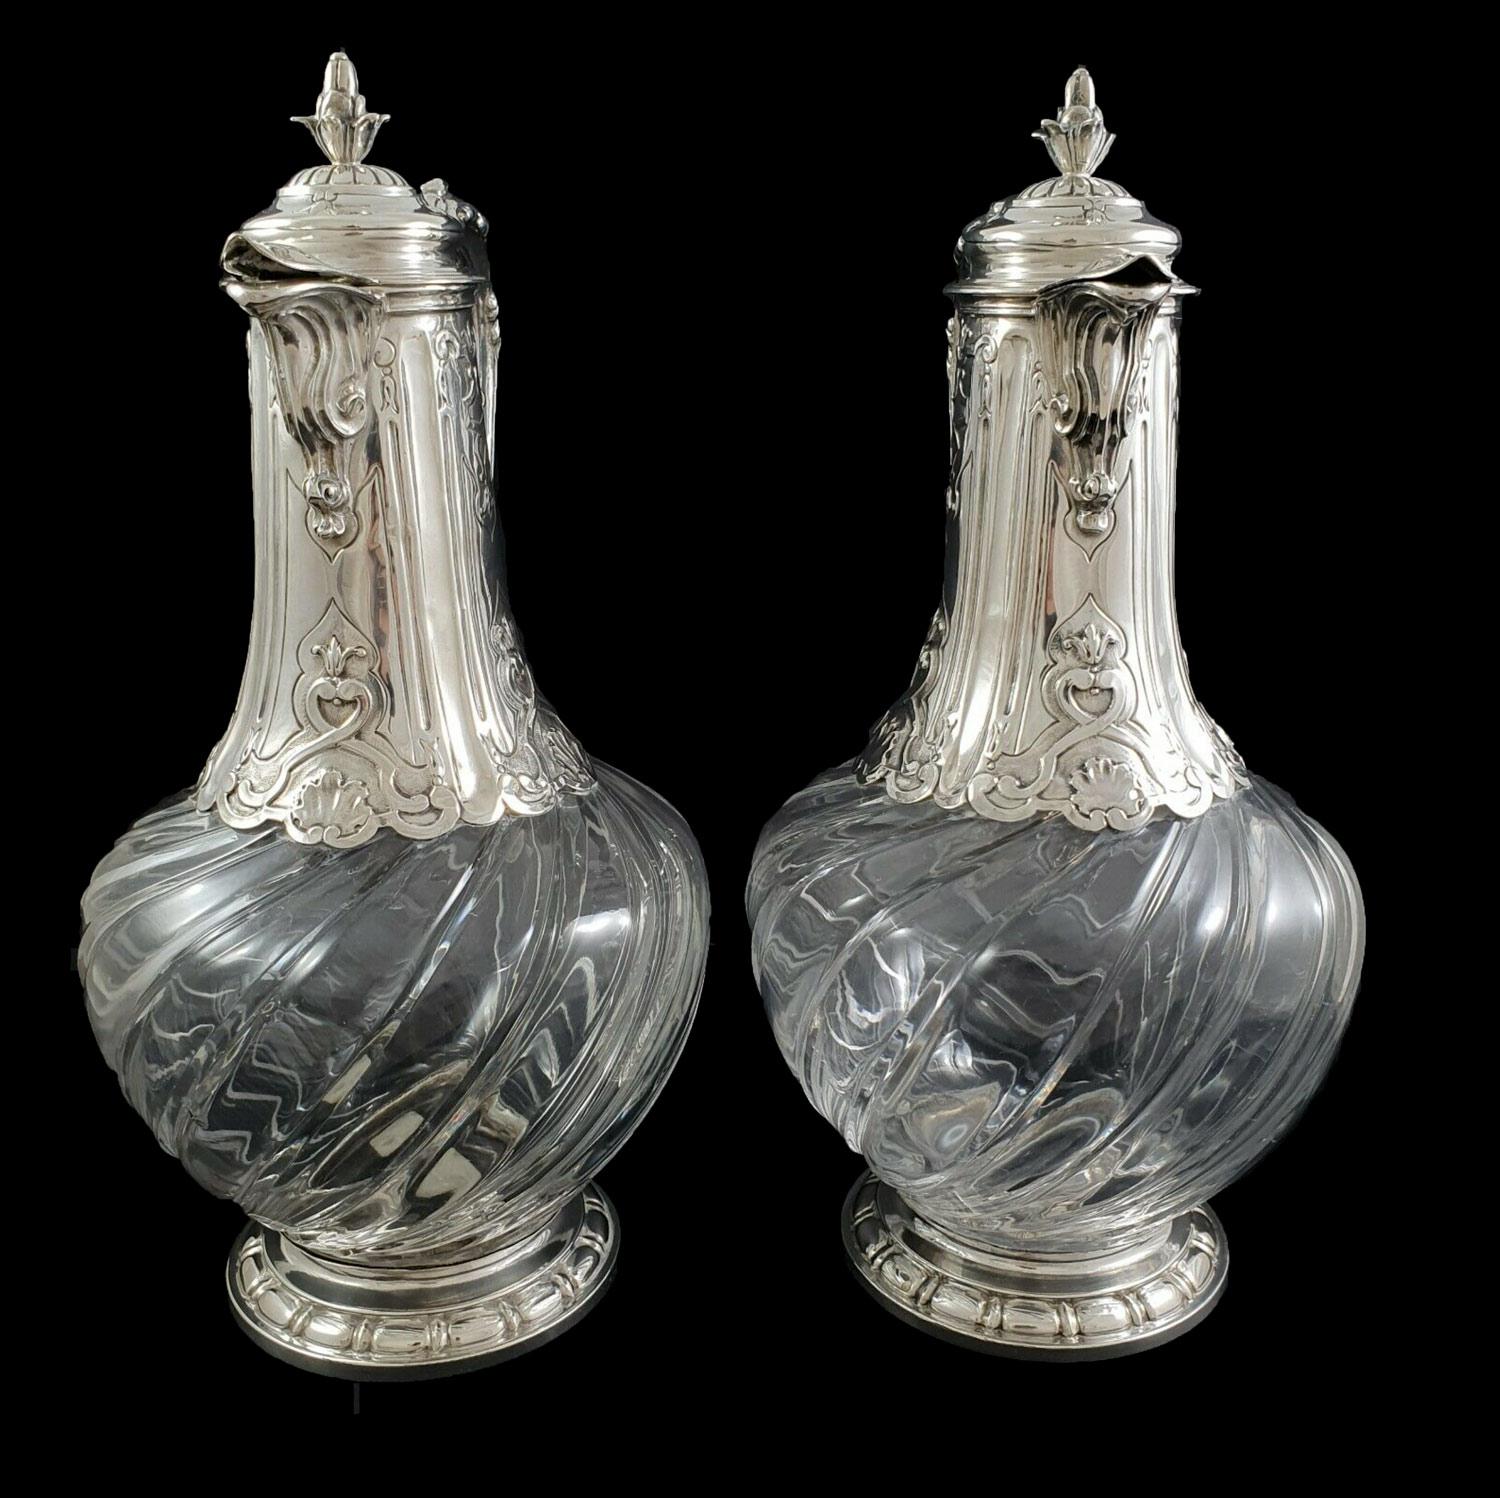 Paar typisch französische, gedrehte und handgravierte Kristallgläser aus dem 19. Jahrhundert mit Fassung aus Sterlingsilber. Der Griff ist mit einem Delphinkopf und Akanthusblättern verziert, der hohe Teil der Montierung ist schön ziseliert und der